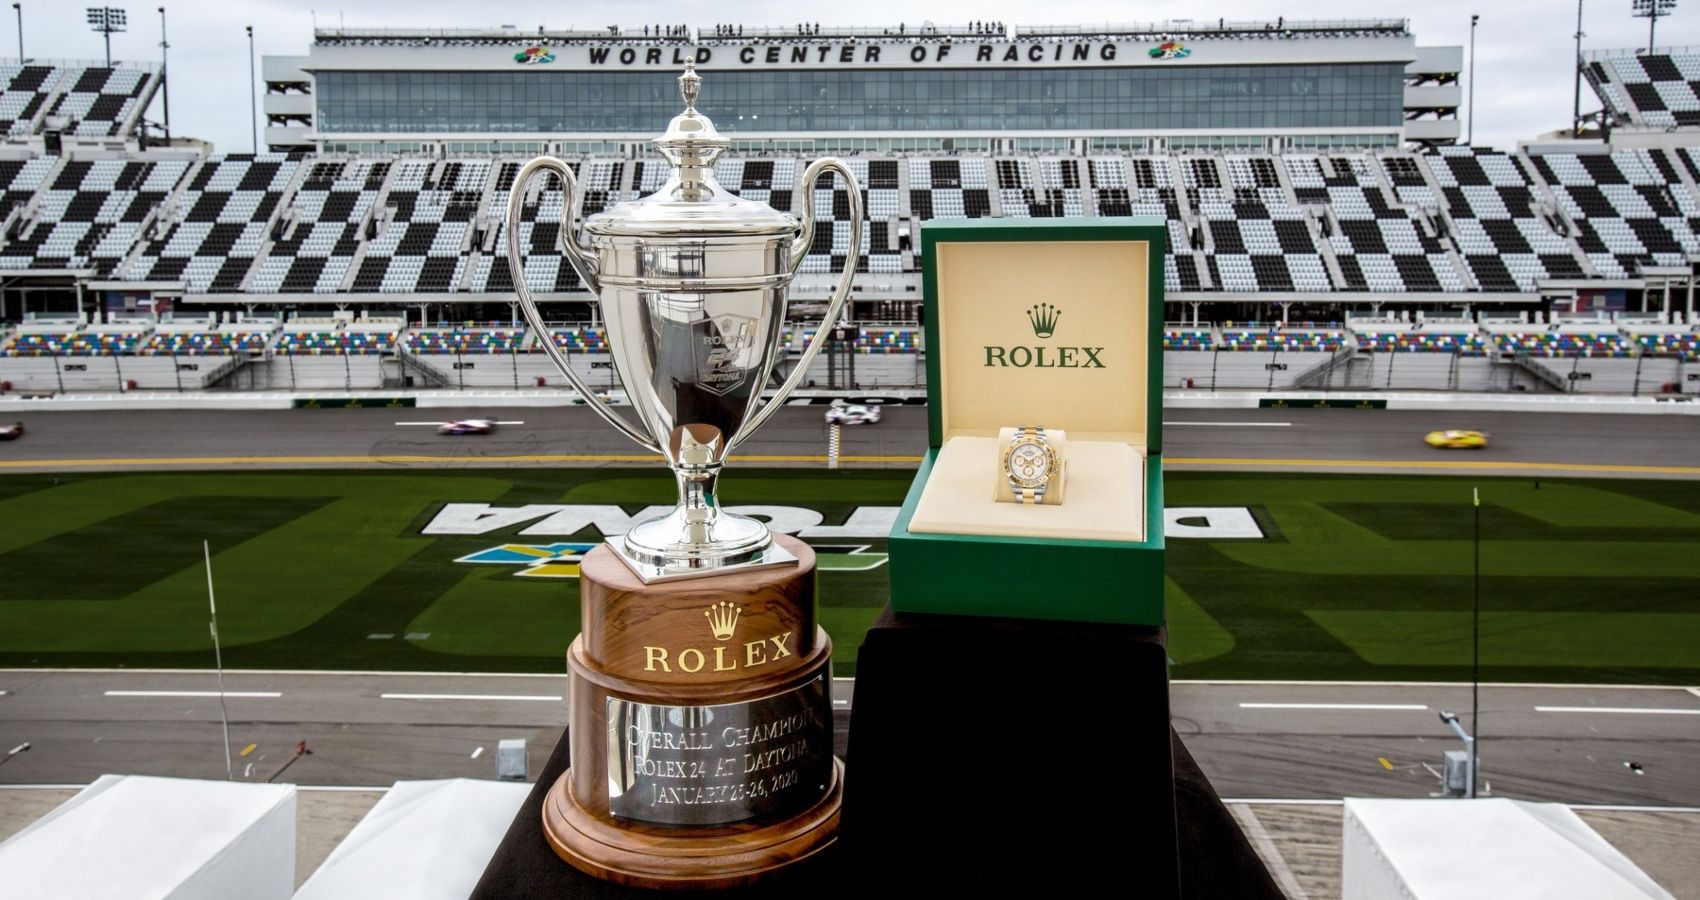 Rolex Daytona at Daytona International Speedway